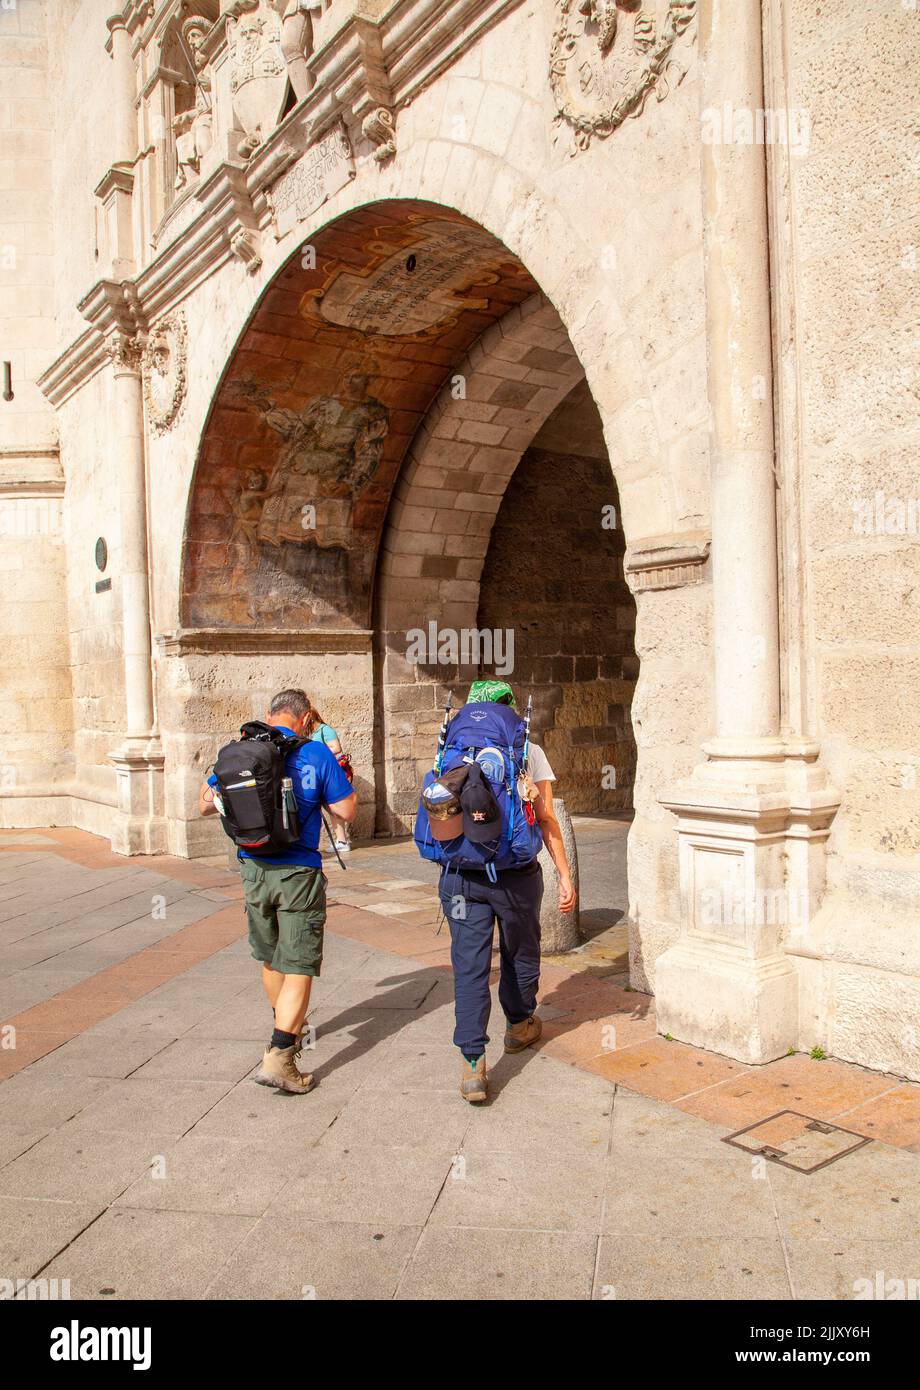 Pèlerins marchant sur le Camino de Santiago, le chemin de Saint-Jacques entrant dans la porte de la ville de Santa Maria, dans la ville espagnole de Burgos Espagne Banque D'Images